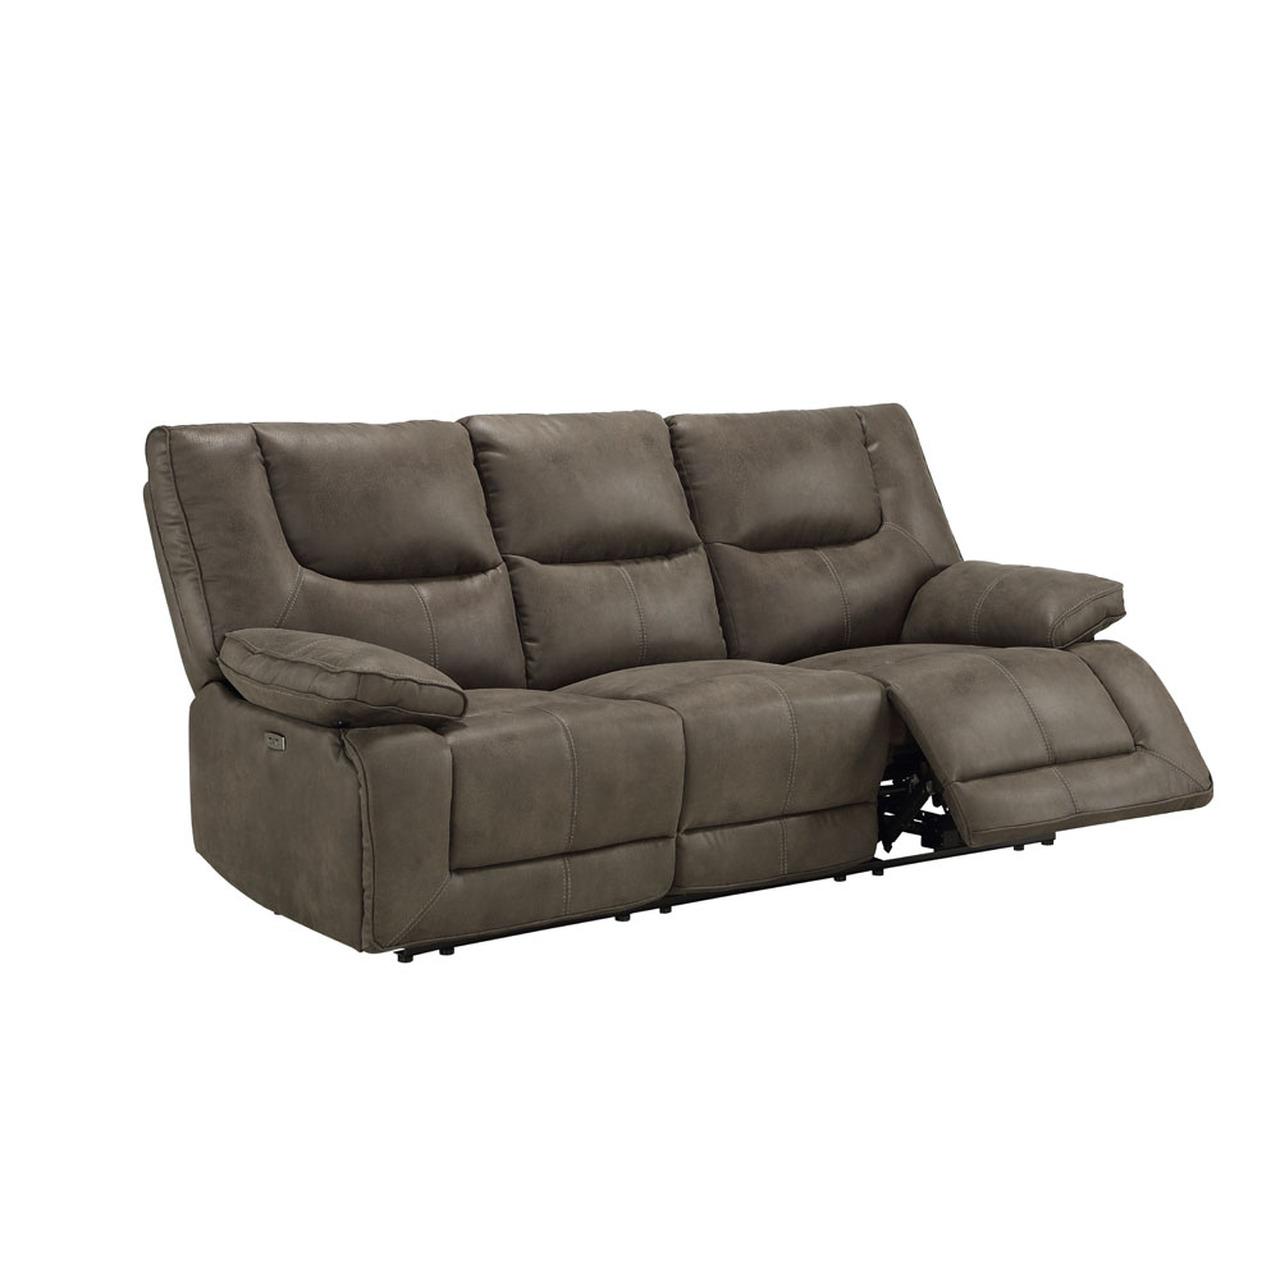 

    
Contemporary Dark Gray Leather Power Sofa + Loveseat by Acme Harumi 54895-2pcs
